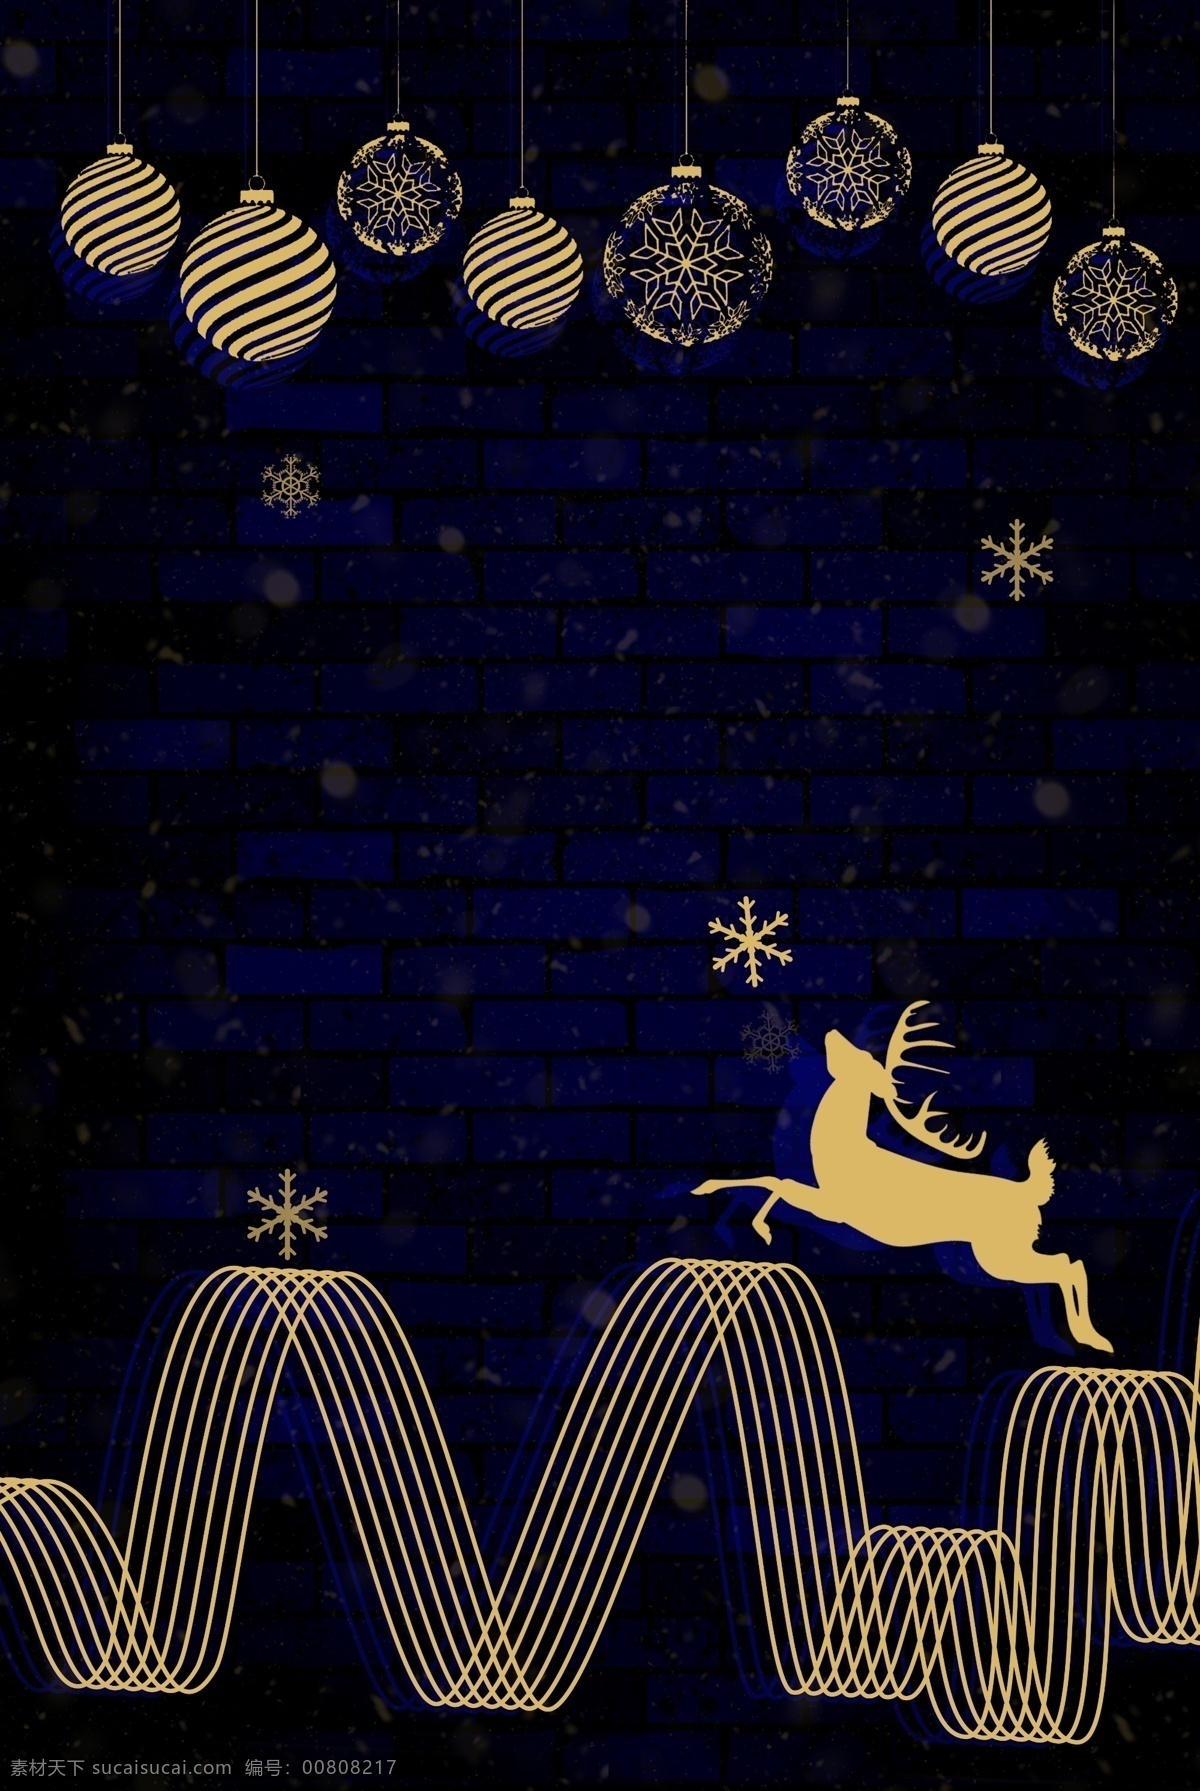 圣诞节 烫金 海报 背景 鹿 跳跃 圣诞球 雪花 下月 12月25日 线条 抽象山